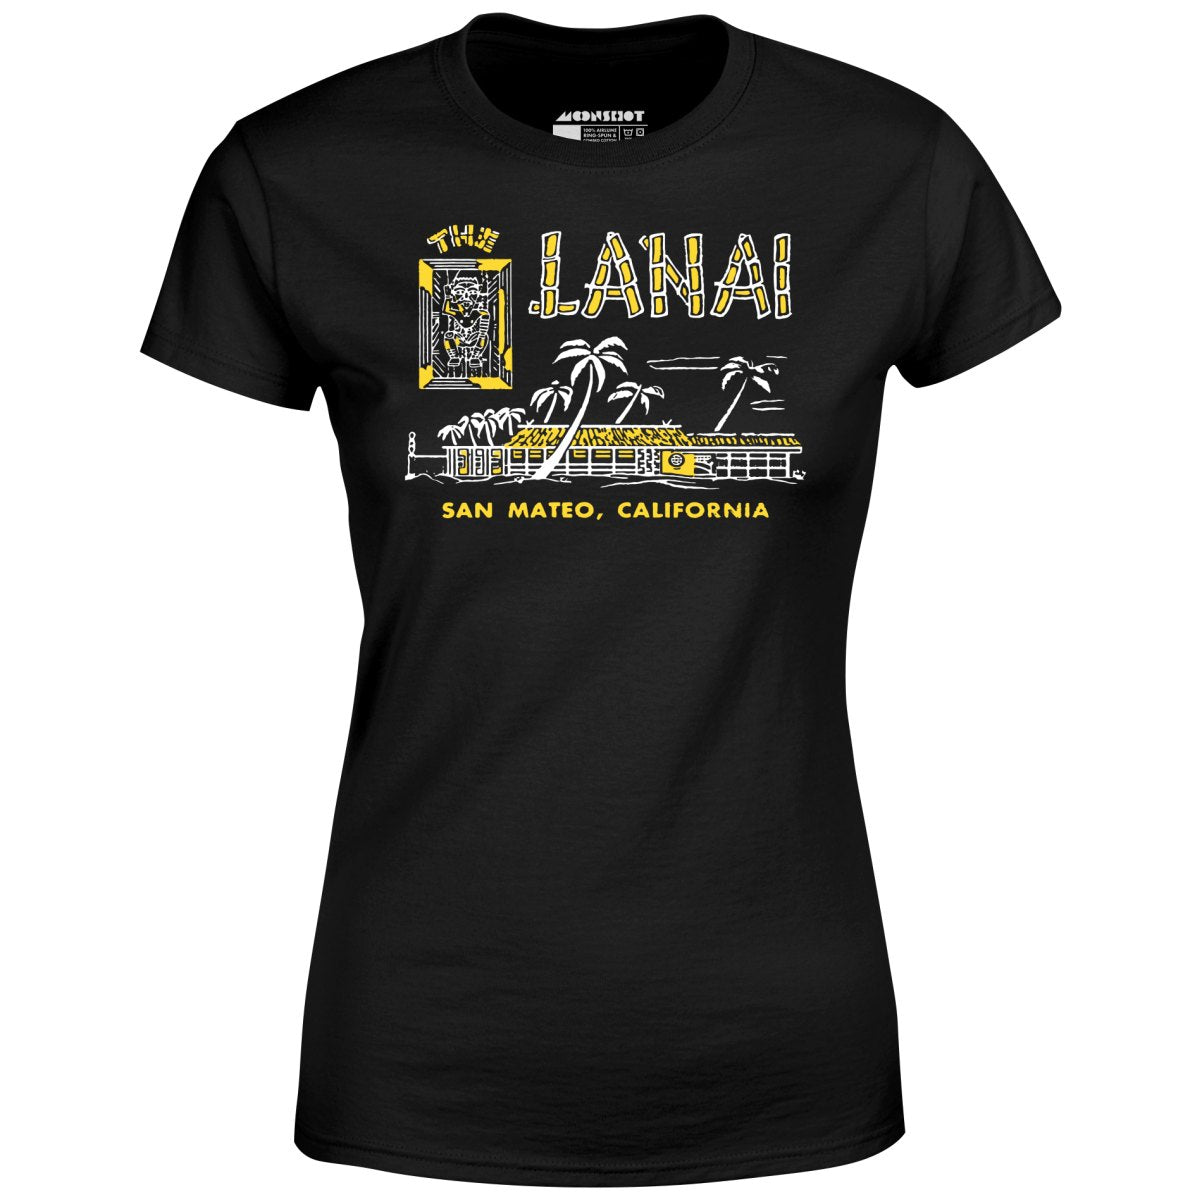 The Lanai - San Mateo, CA - Vintage Tiki Bar - Women's T-Shirt